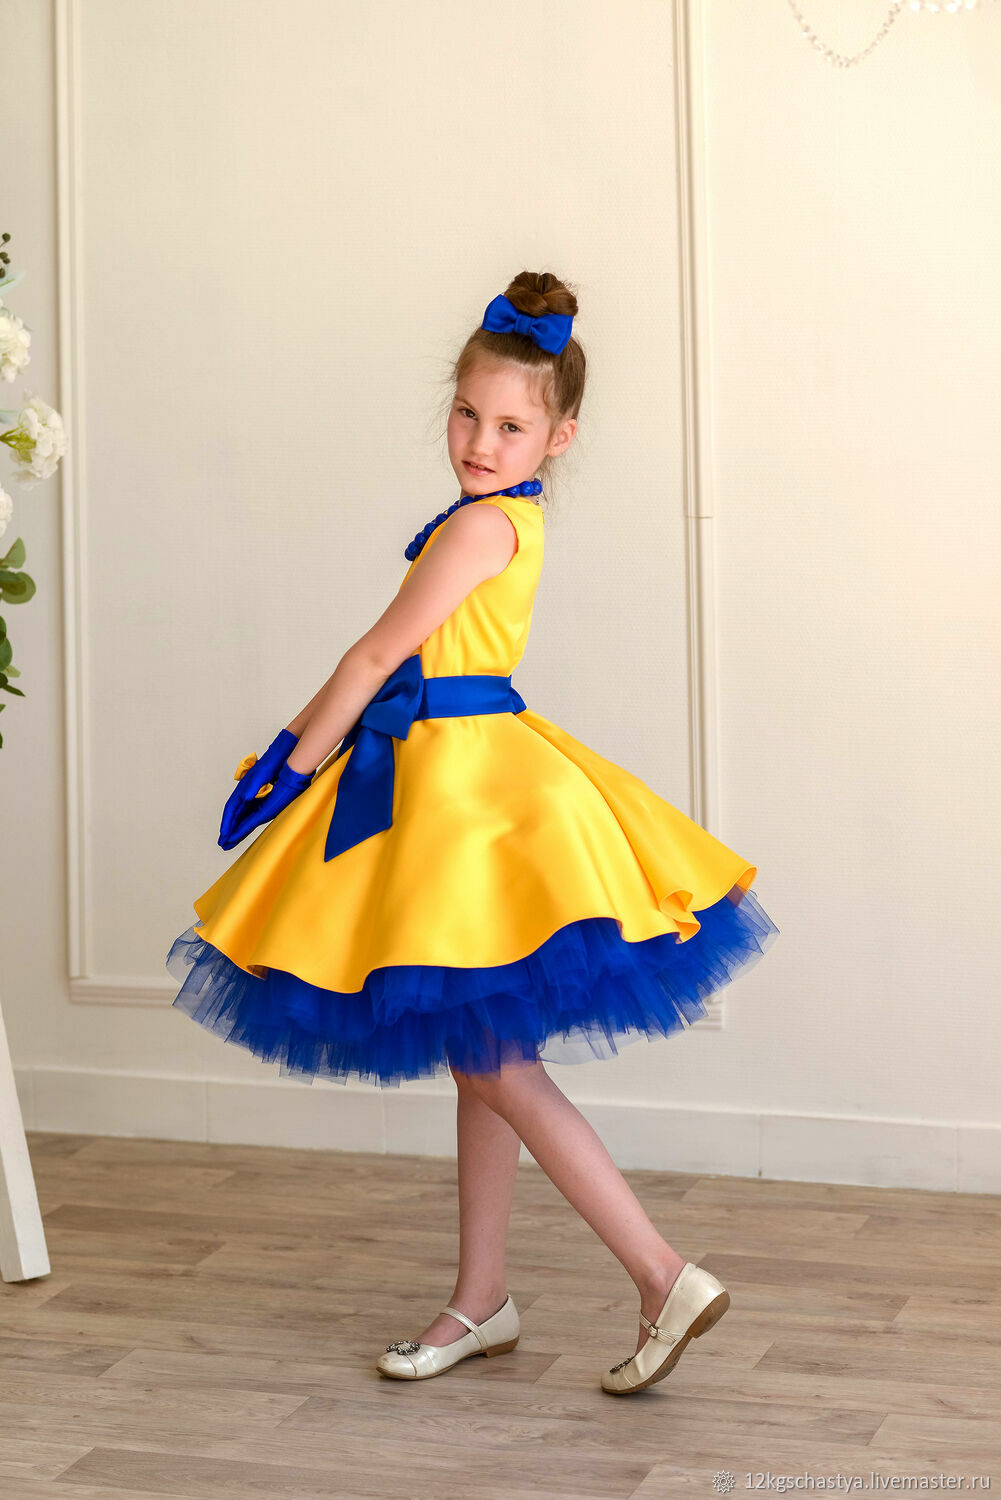 Платья стиляги для девочек | Купить детское платье в горошек в интернет-магазине Crazylime